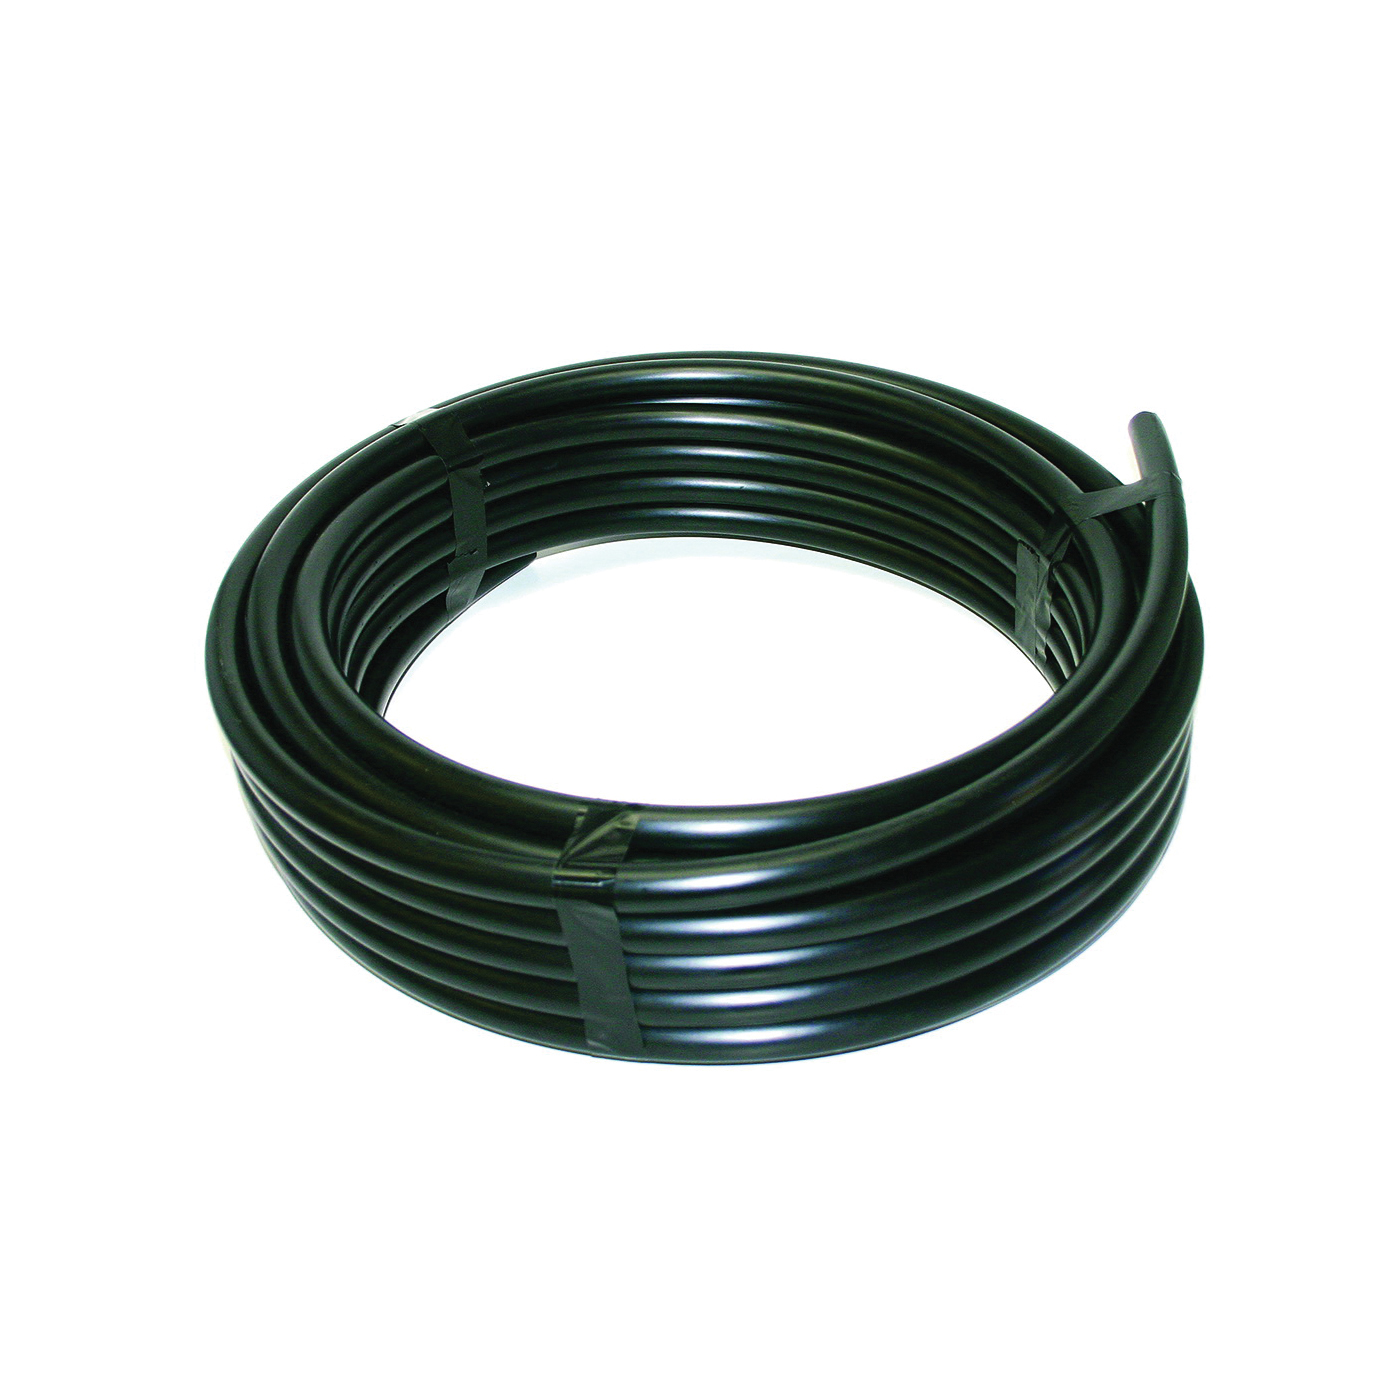 37154 Riser Flexible Pipe, 1/2 in, 50 ft L, Polyethylene, Black